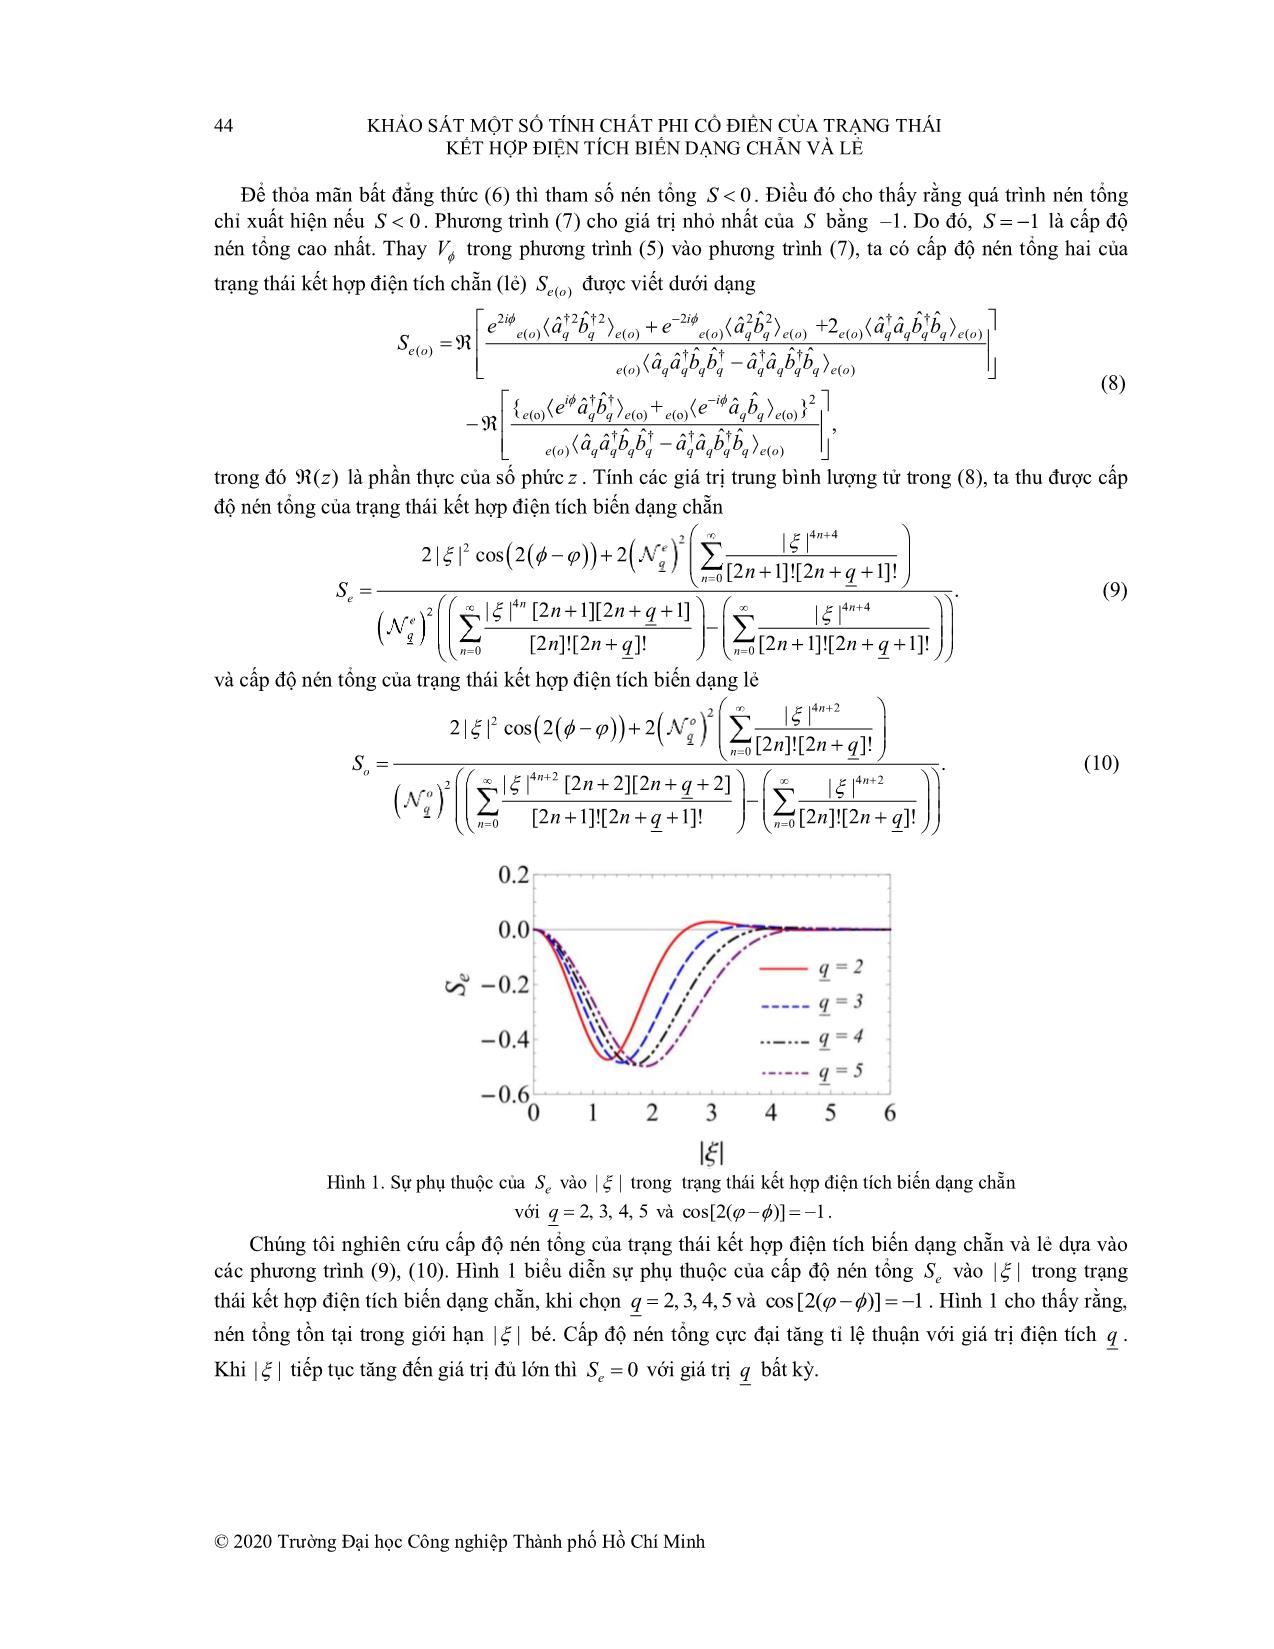 Khảo sát một số tính chất phi cổ điển của trạng thái kết hợp điện tích biến dạng chẵn và lẻ trang 3